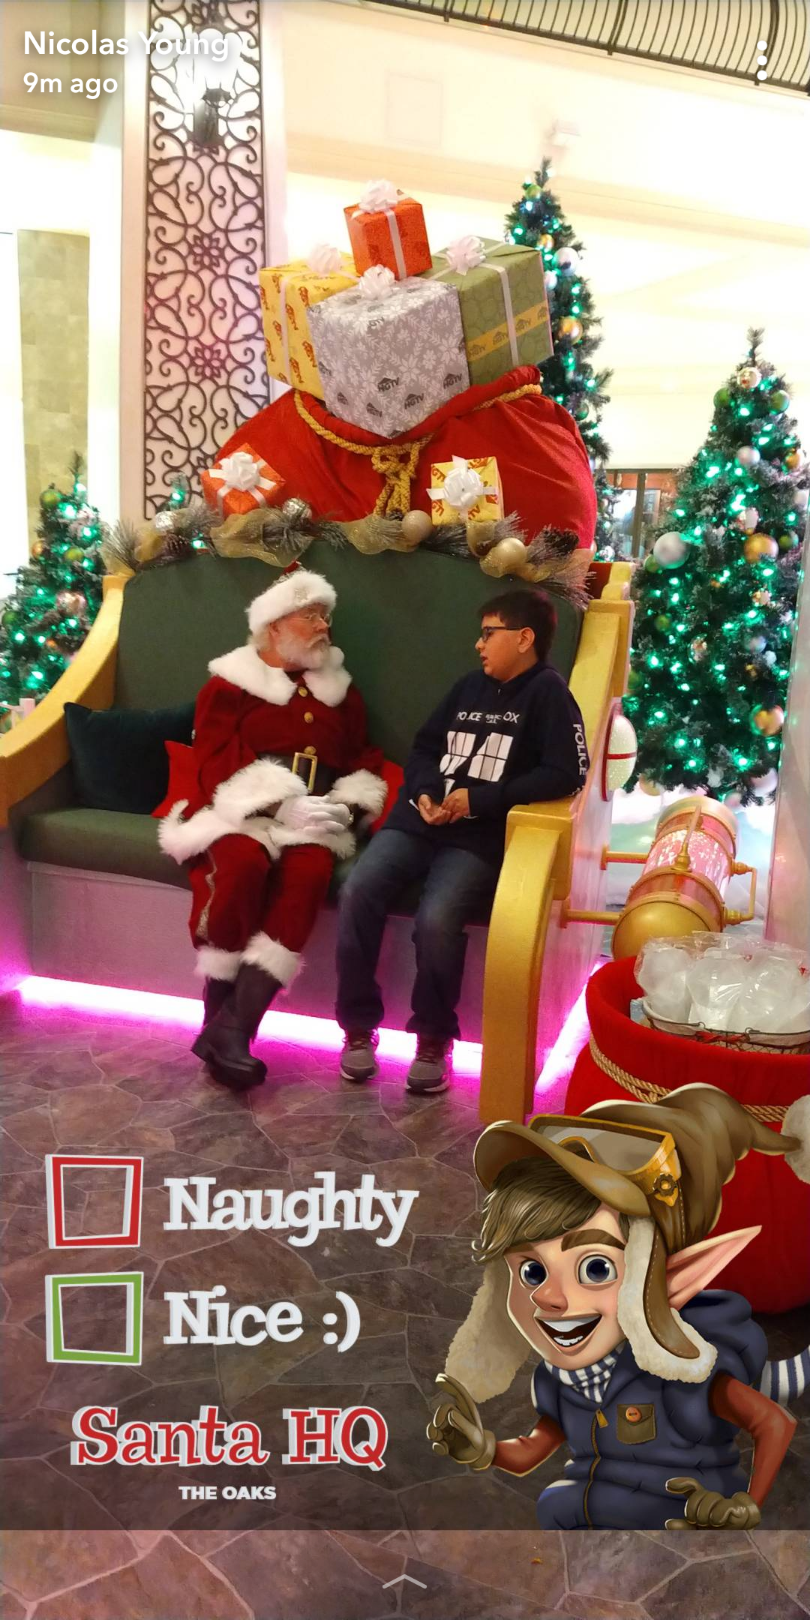 Holiday Fun With Santa and HGTV at Santa HQ